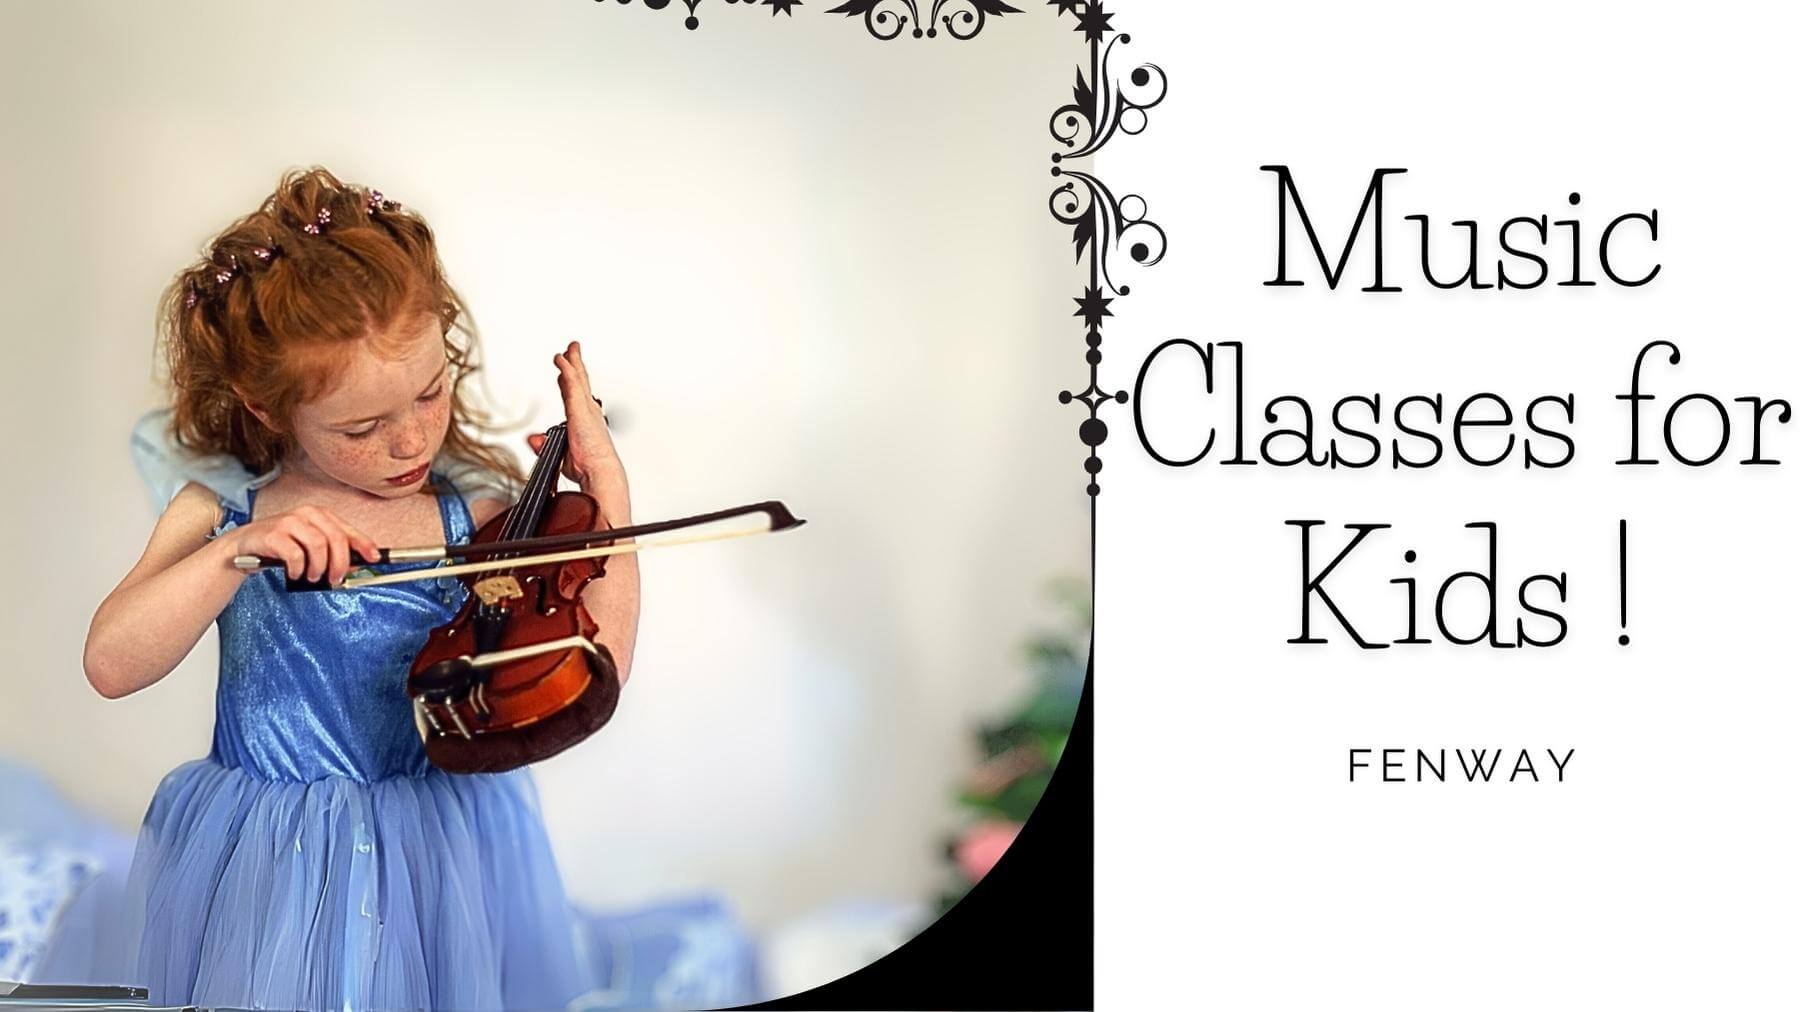 Music Classes for Kids in Fenway, Massachusetts